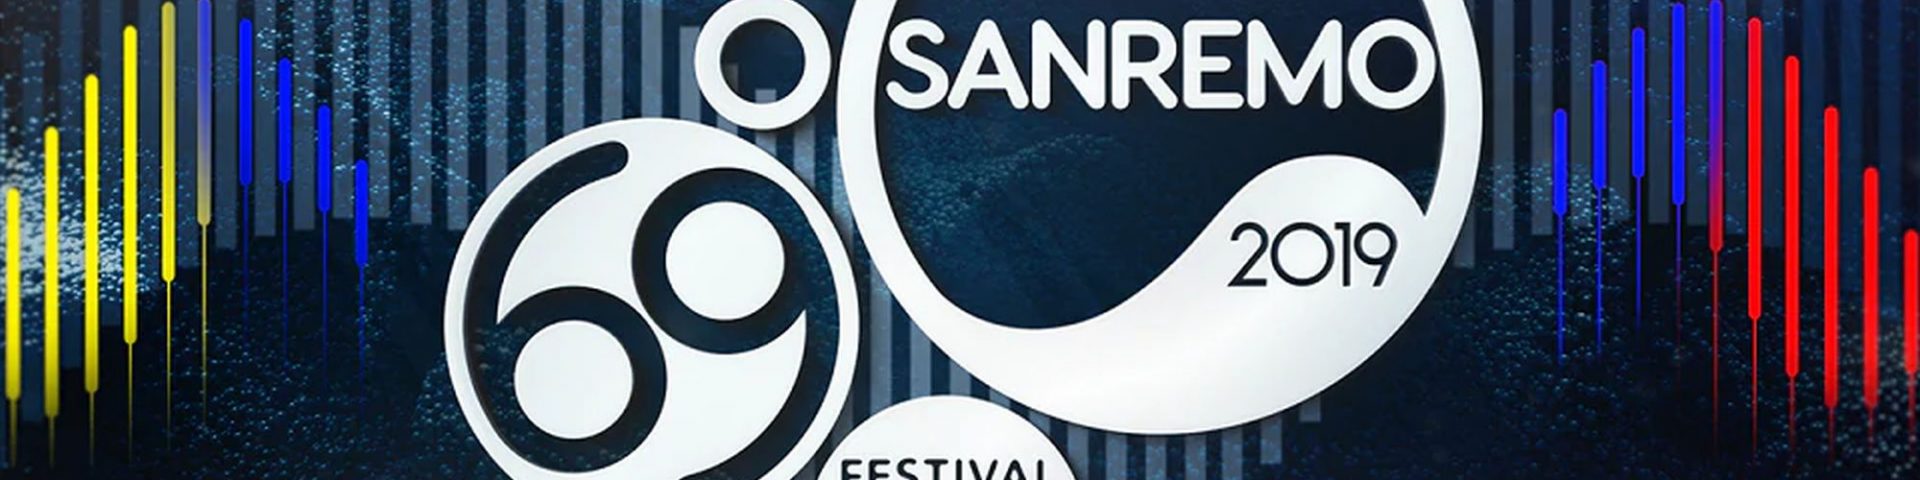 Sanremo 2019: la conferenza stampa di presentazione in streaming - Video